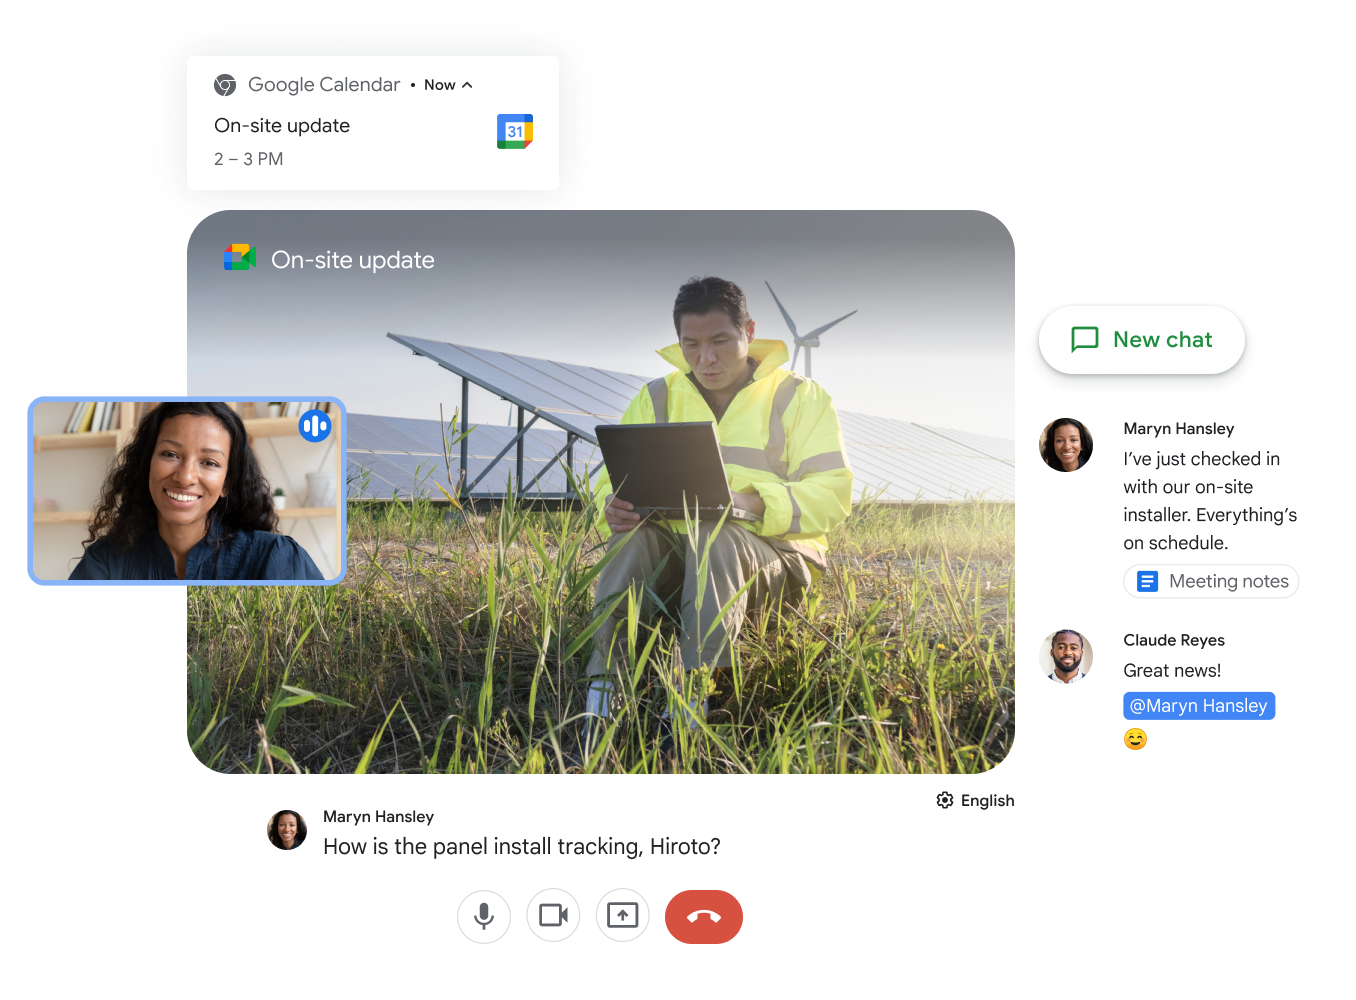 チームでの共同作業を可能にするために、Google Meet と Google Chat がコラボレーションします。